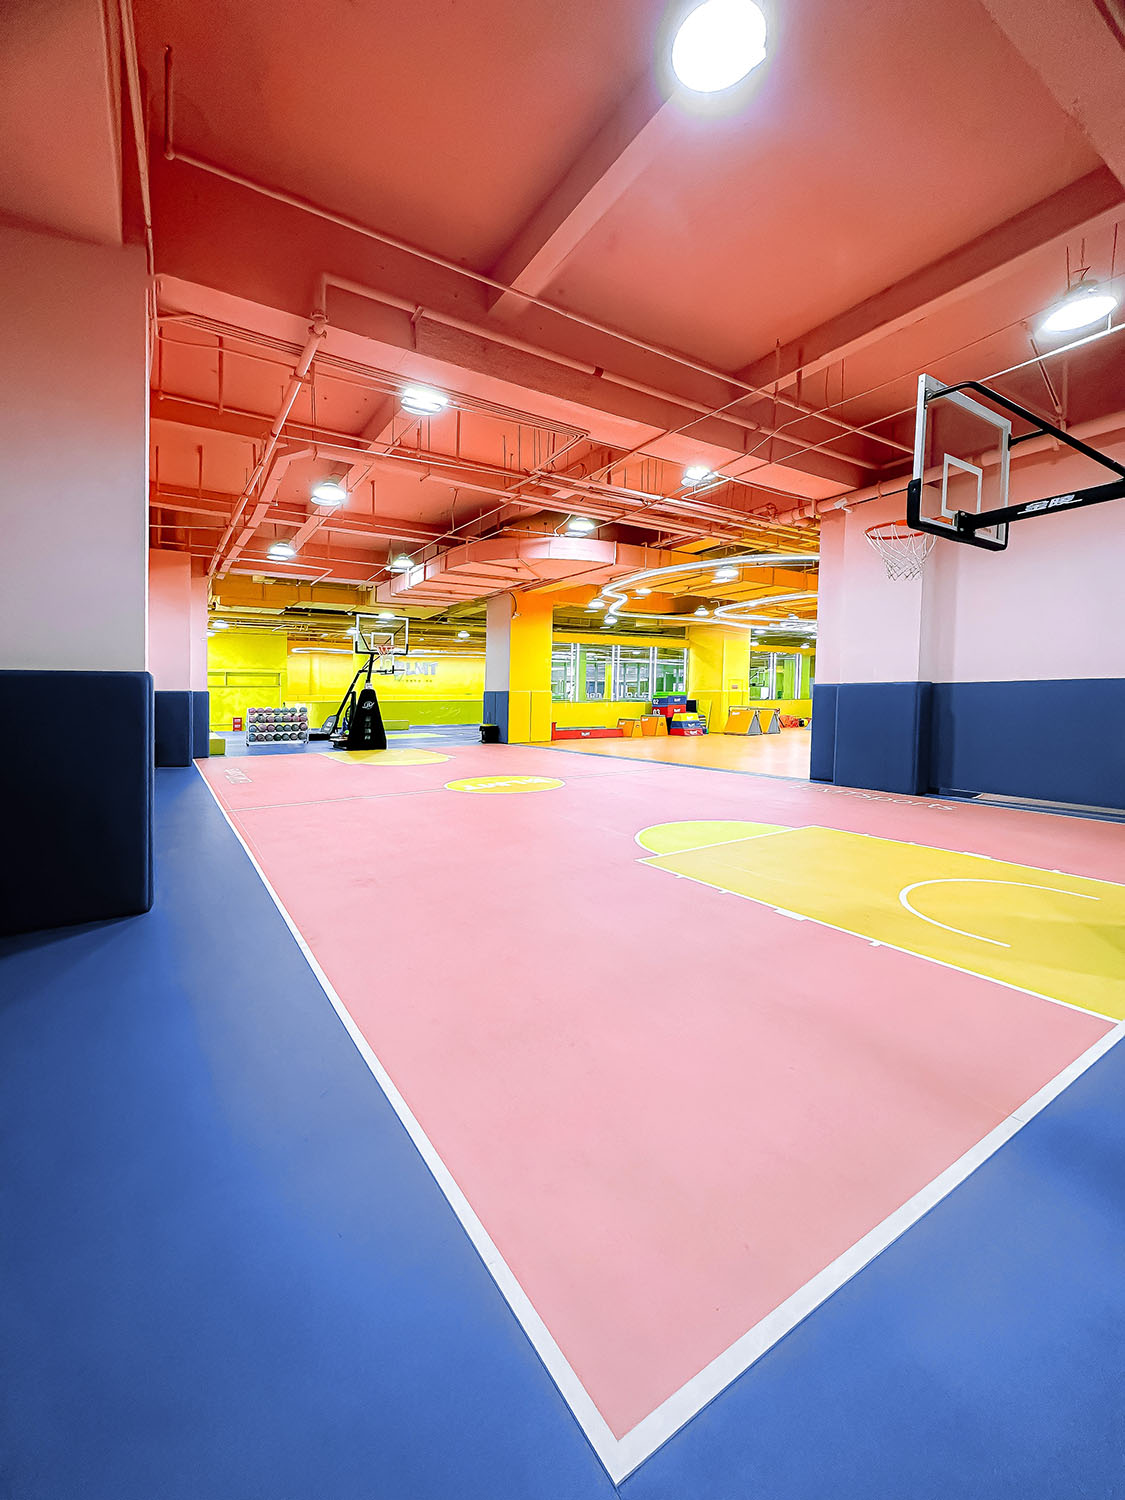 室内运动空间,篮球场设计,篮球馆设计,室内篮球场设计,运动空间设计,昆明元素体育海乐世界3.0,昆明,平介设计,杨楠